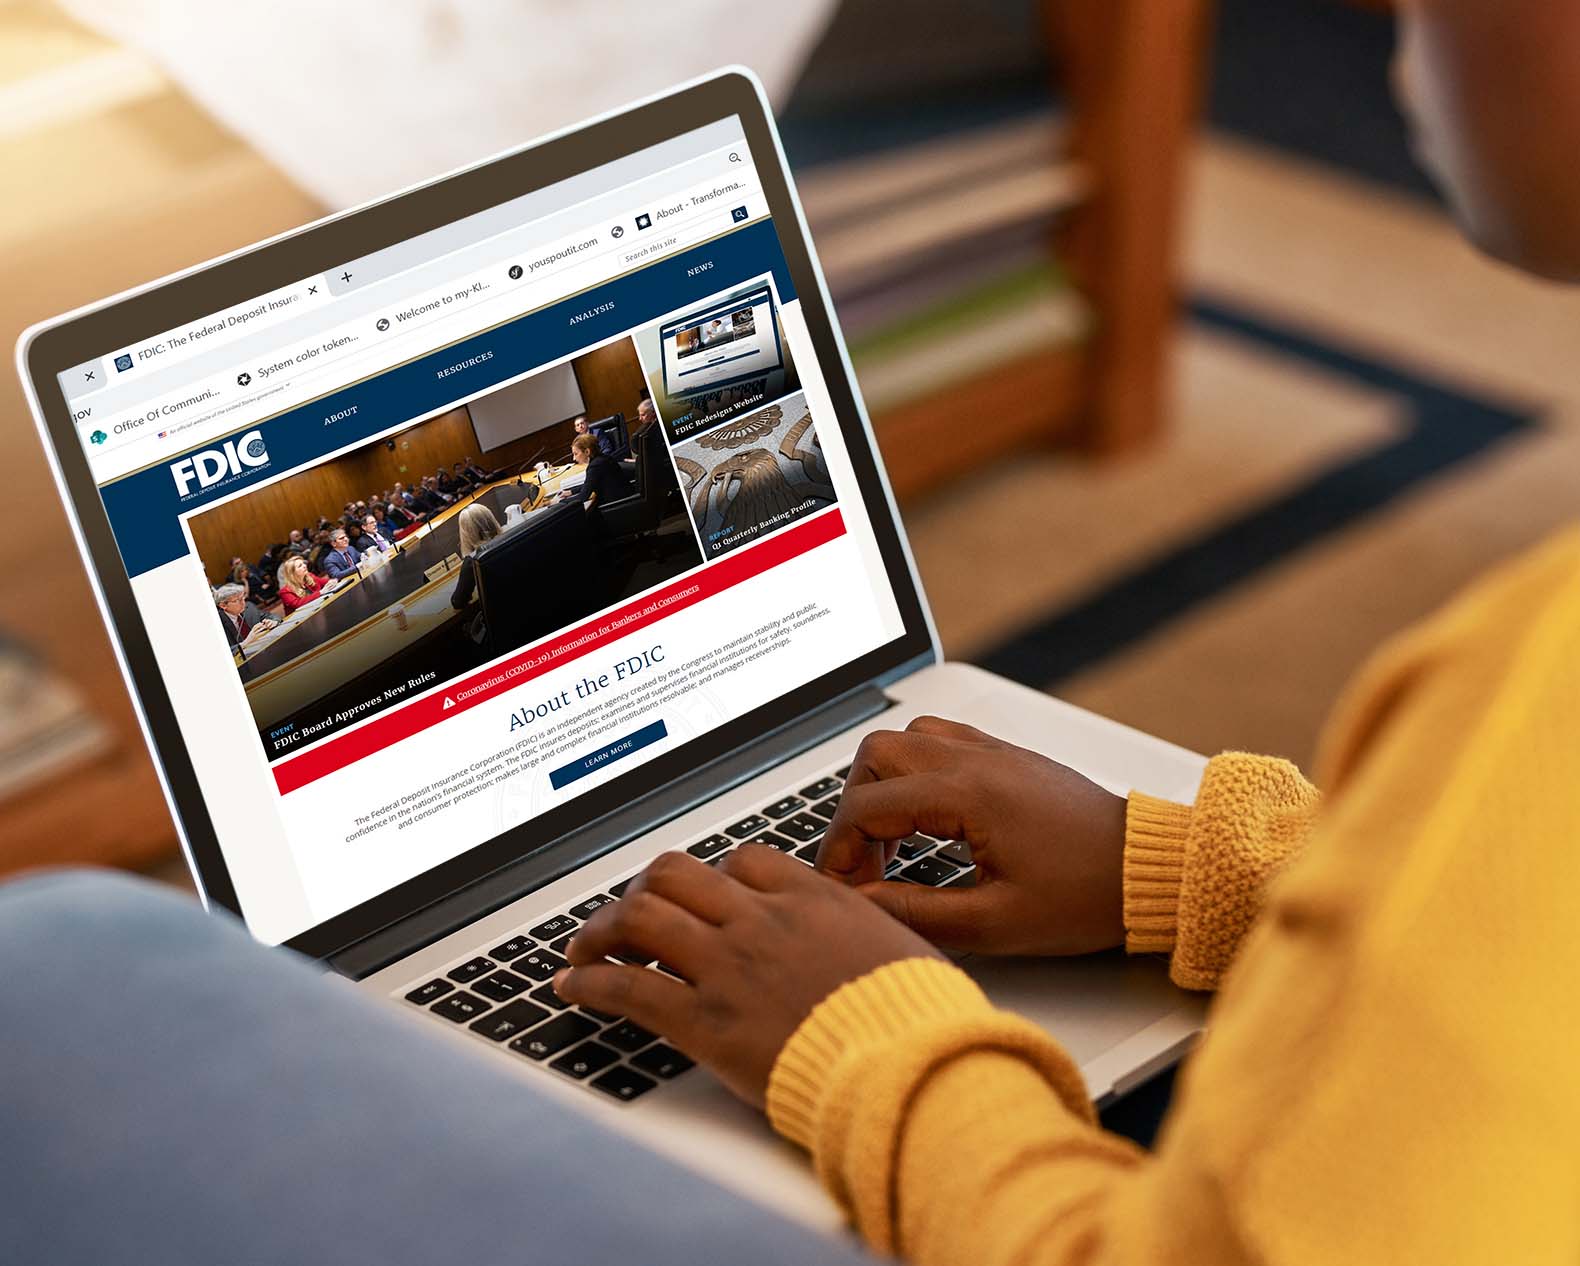 Covid alert on FDIC website seen on a laptop